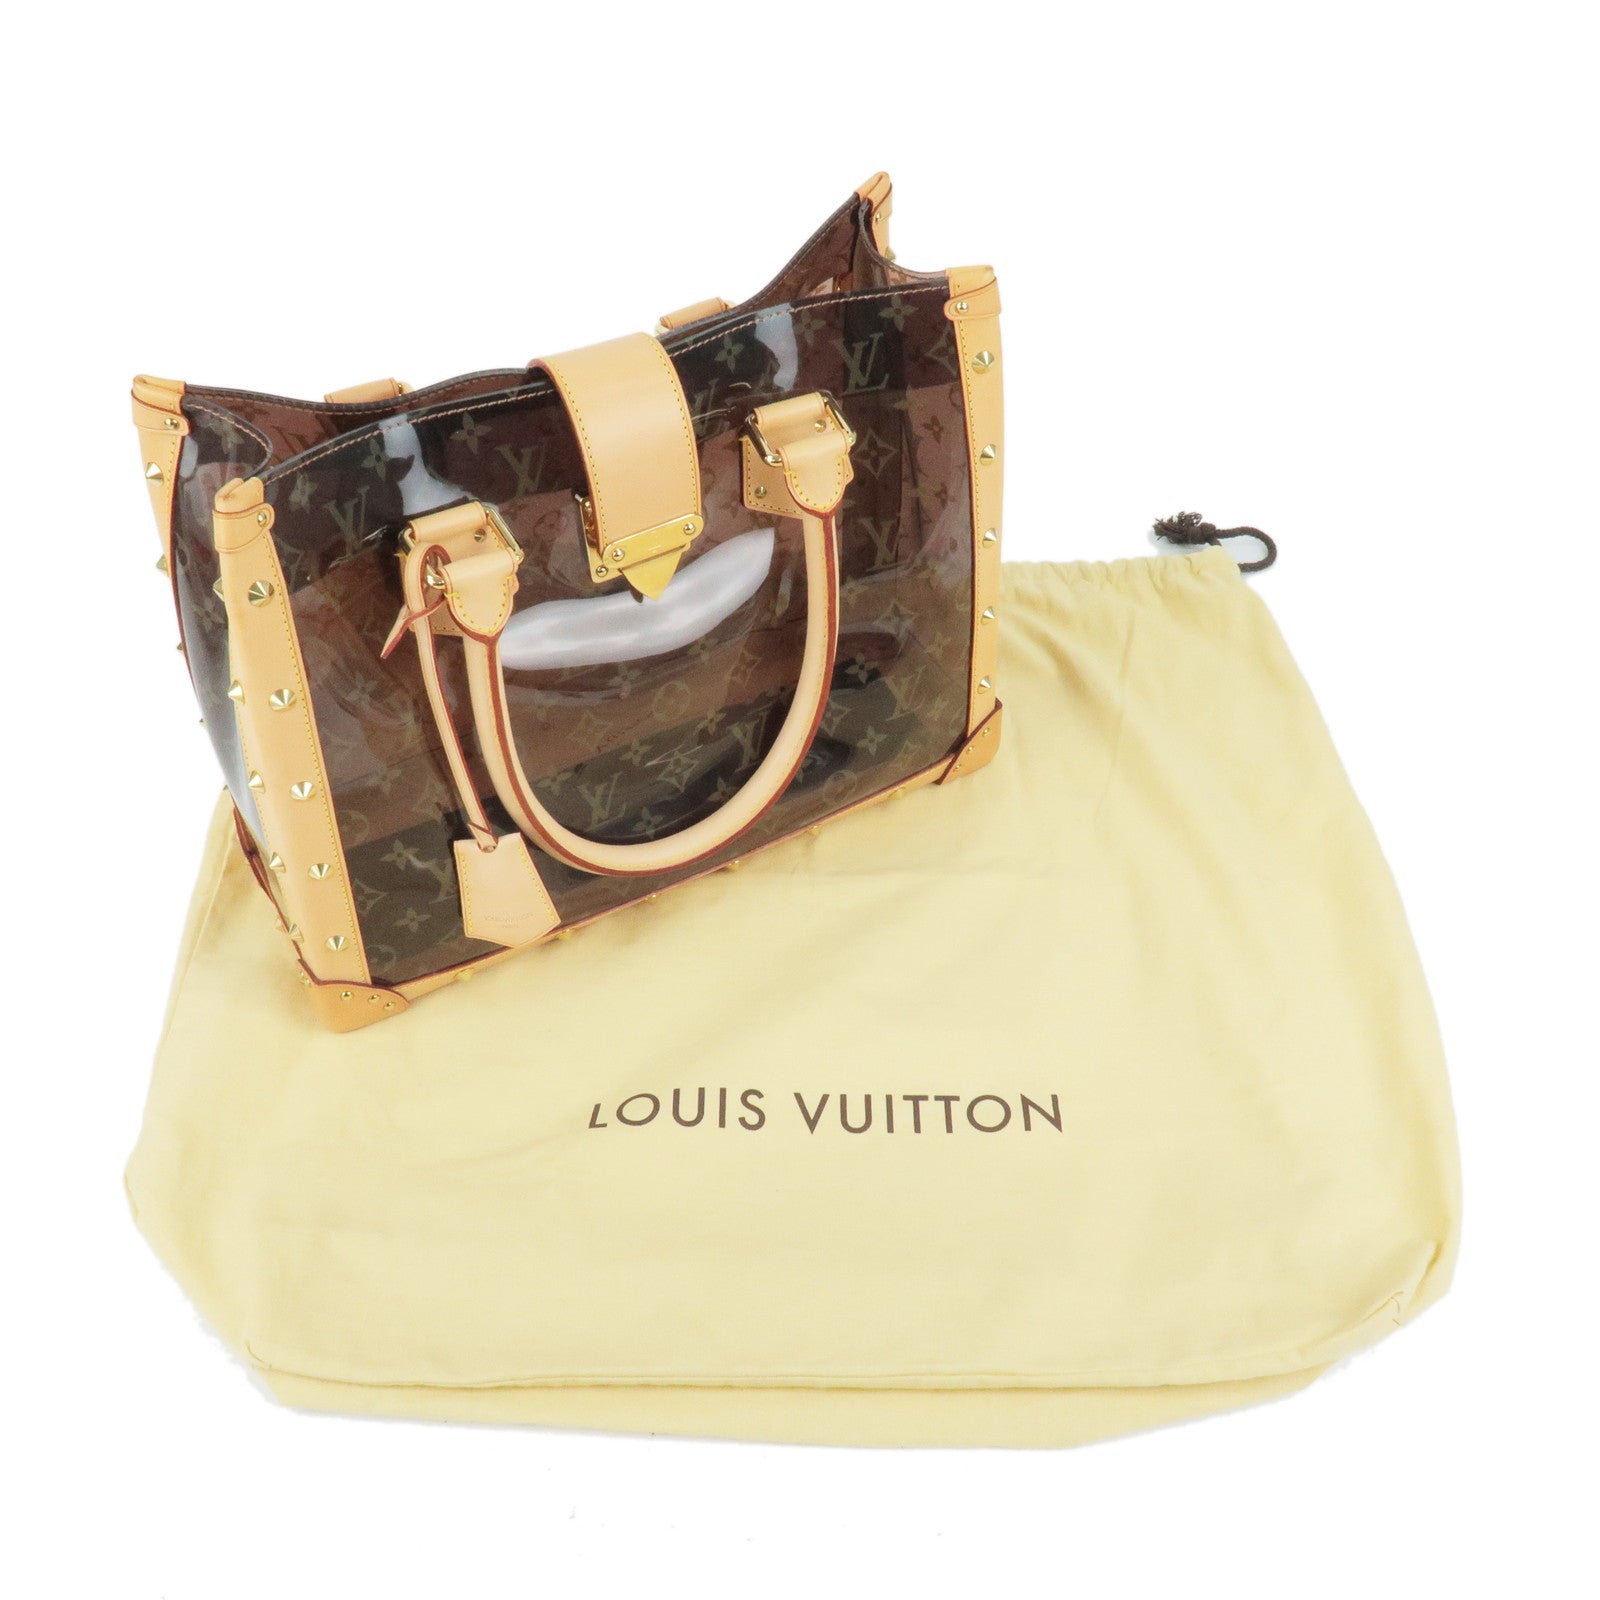 LOUIS VUITTON LOUIS VUITTON Saint Louis Clutch Second Bag N51993